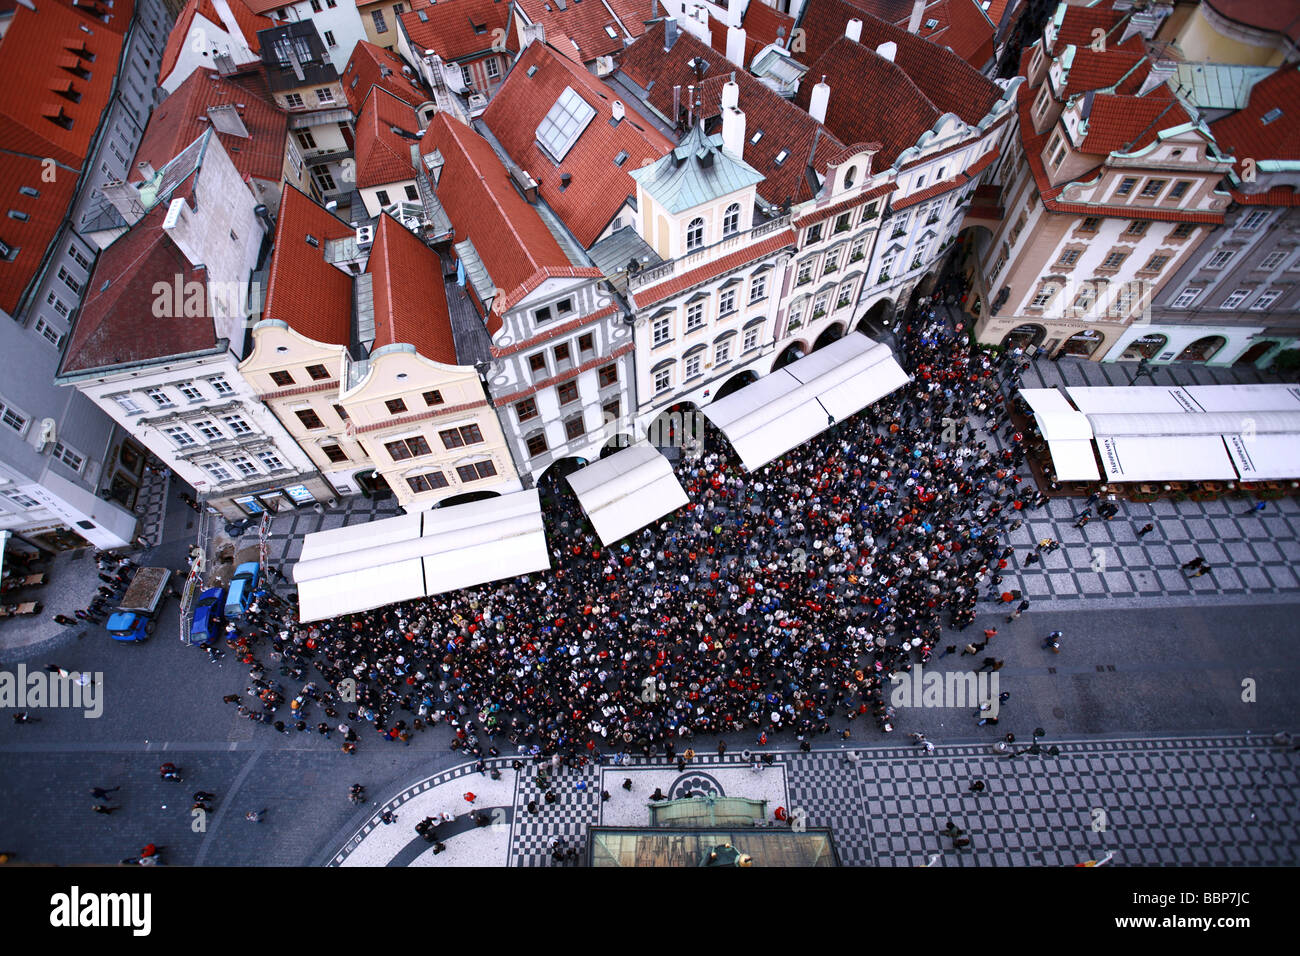 Massen von Menschen durch alte Rathaus Blick auf astronomische Uhr in Prag Tschechien vom Clock Tower aus gesehen Stockfoto